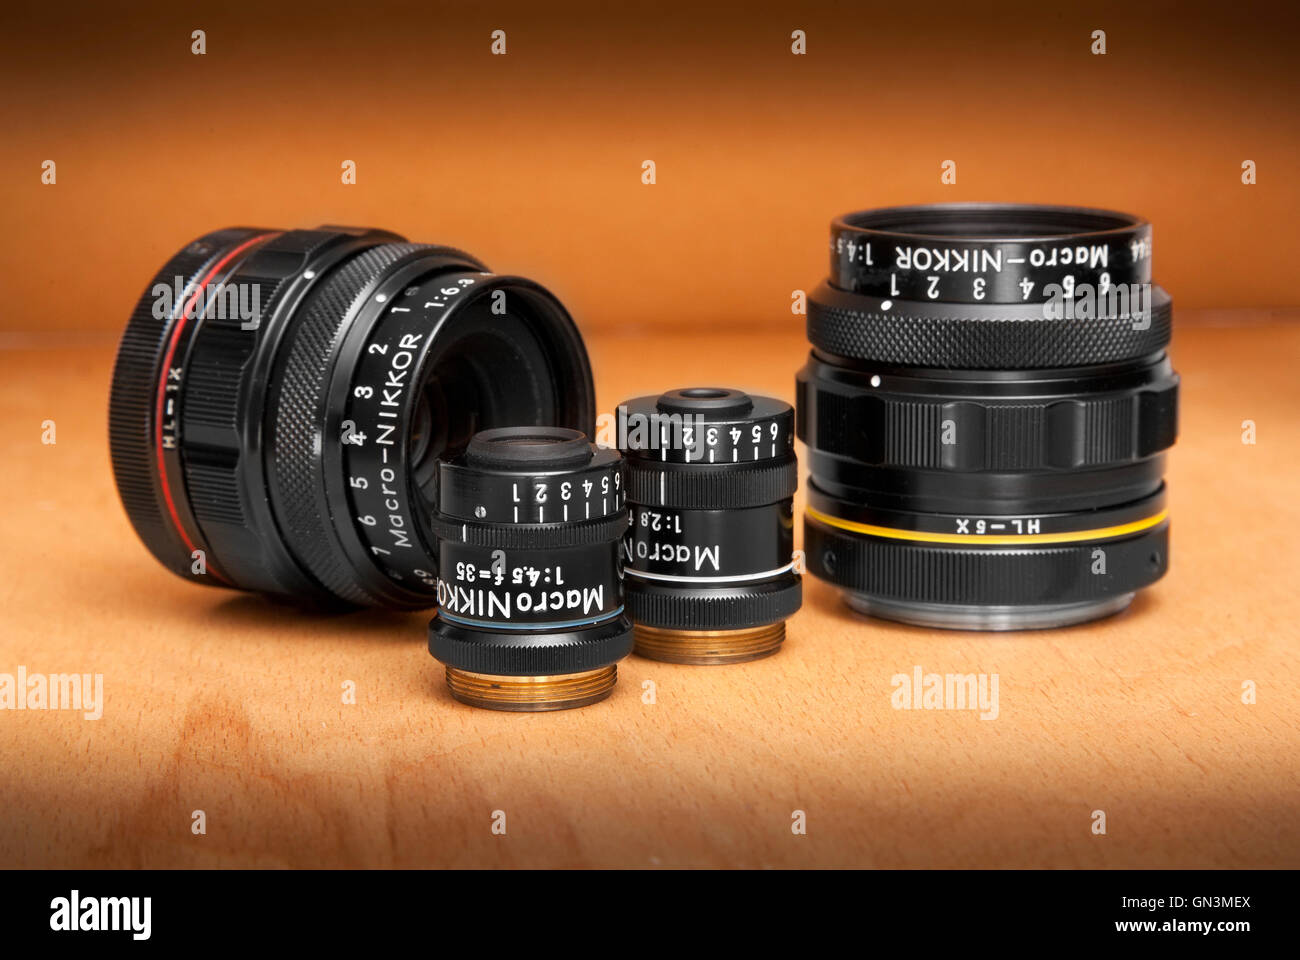 Nikon Multiphot Makro lenti Nikkor, specializzato di alta qualità le lenti macro, parte della scientifica sistema Multiphot Foto Stock